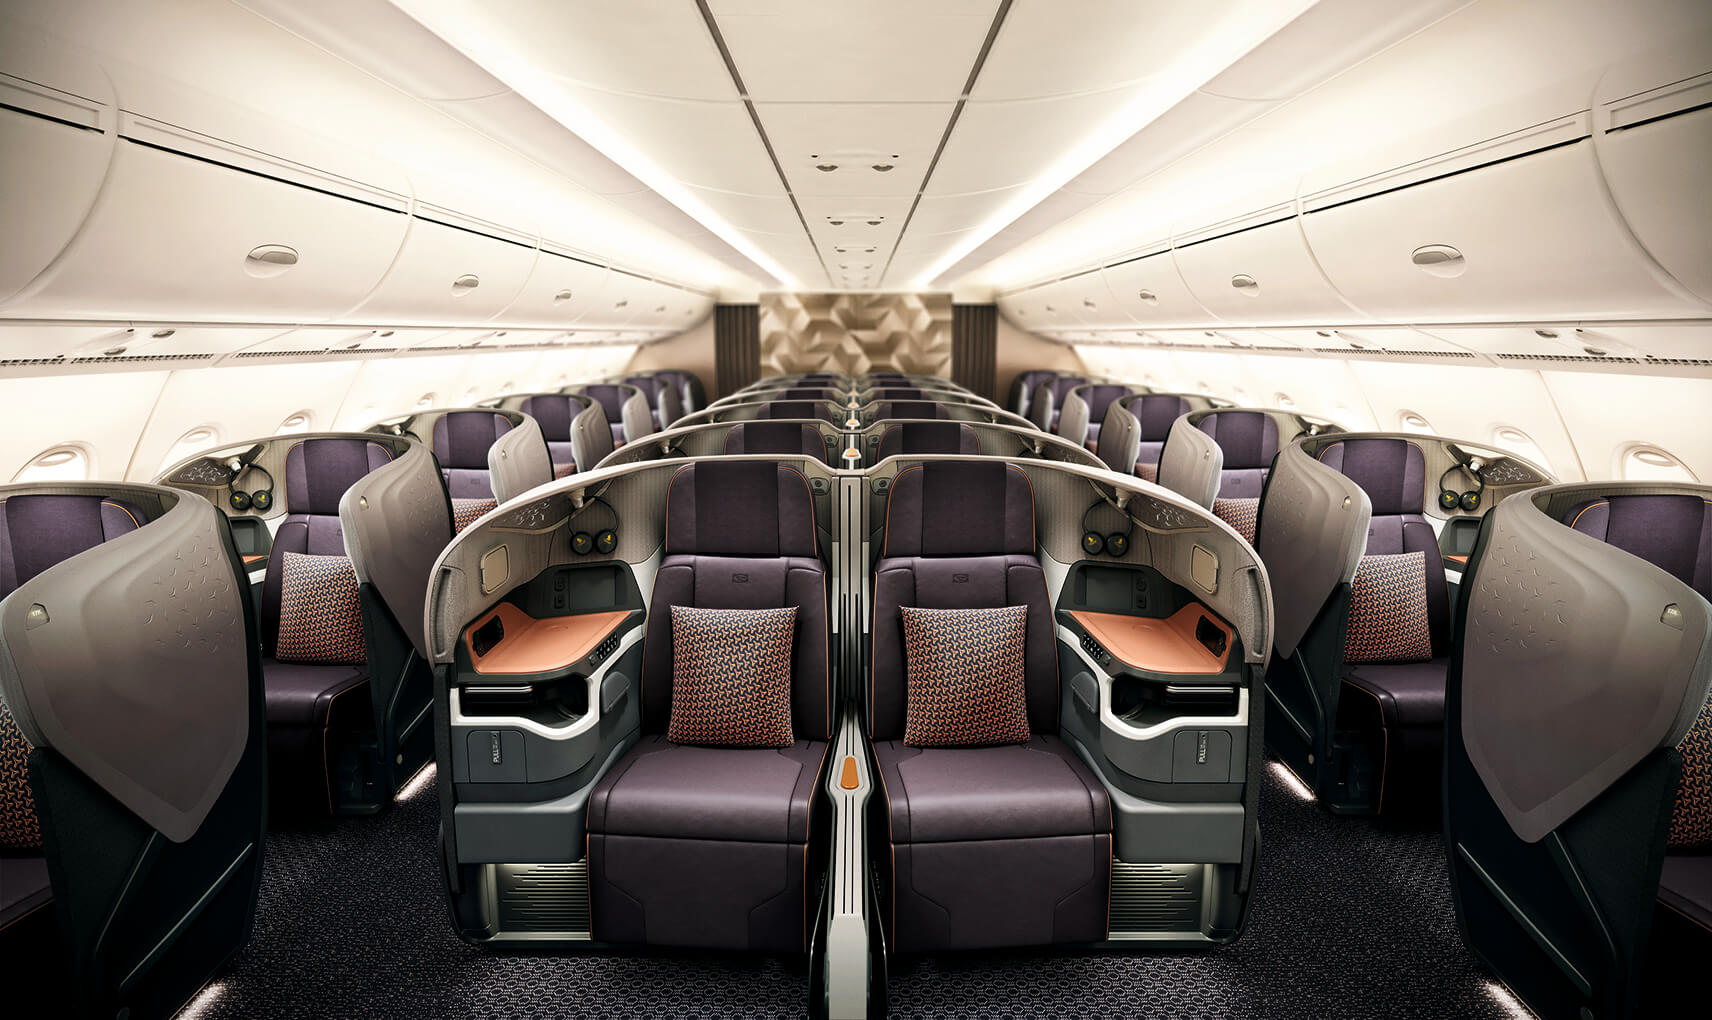 Singapore Airlines Business Class A380R (Retrofit)